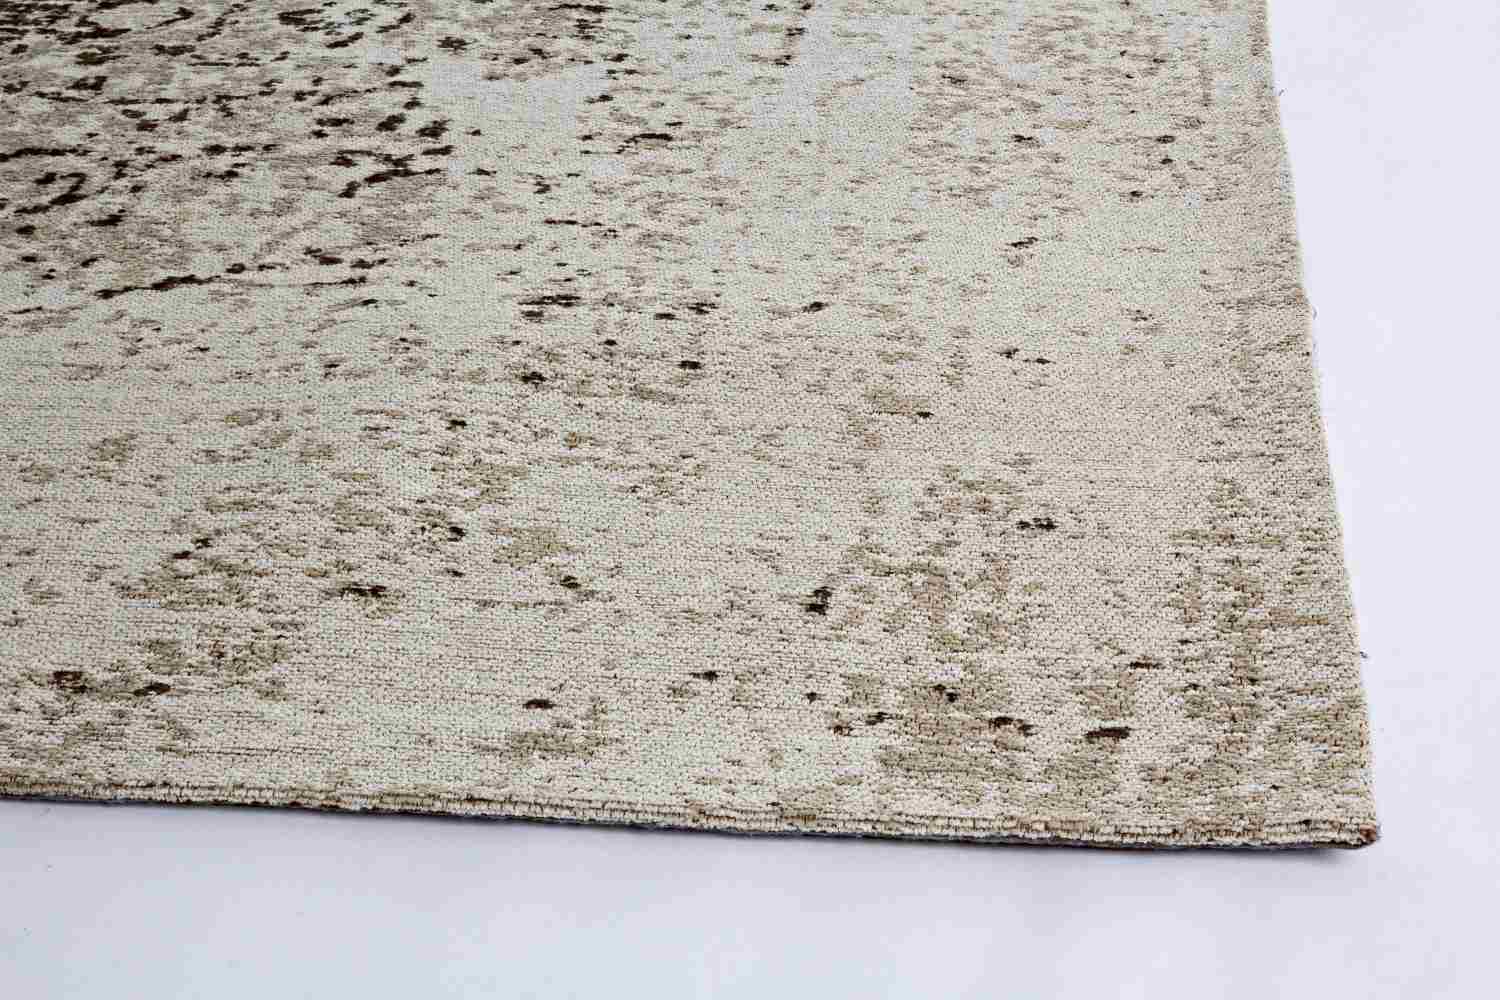 Der Teppich Jaipur überzeugt mit seinem klassischen Design. Gefertigt wurde die Vorderseite aus 95% Baumwolle und 5% Polyester, die Rückseite aus 100% Baumwolle. Der Teppich besitzt einen grauen Farbton und die Maße von 140x200 cm.